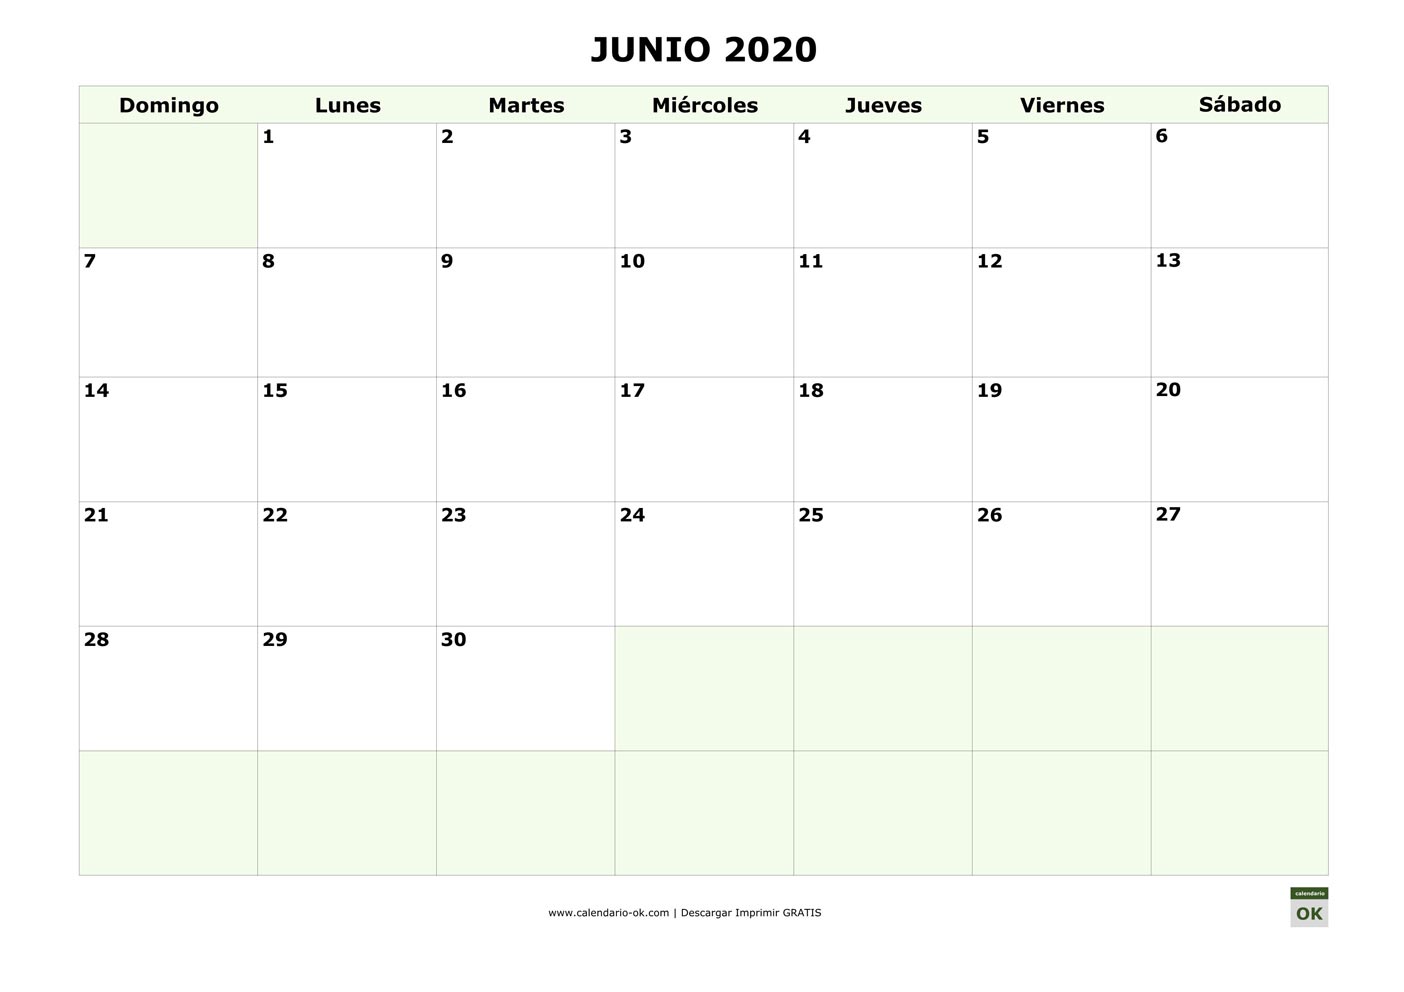 JUNIO 2020 empieza por DOMINGO